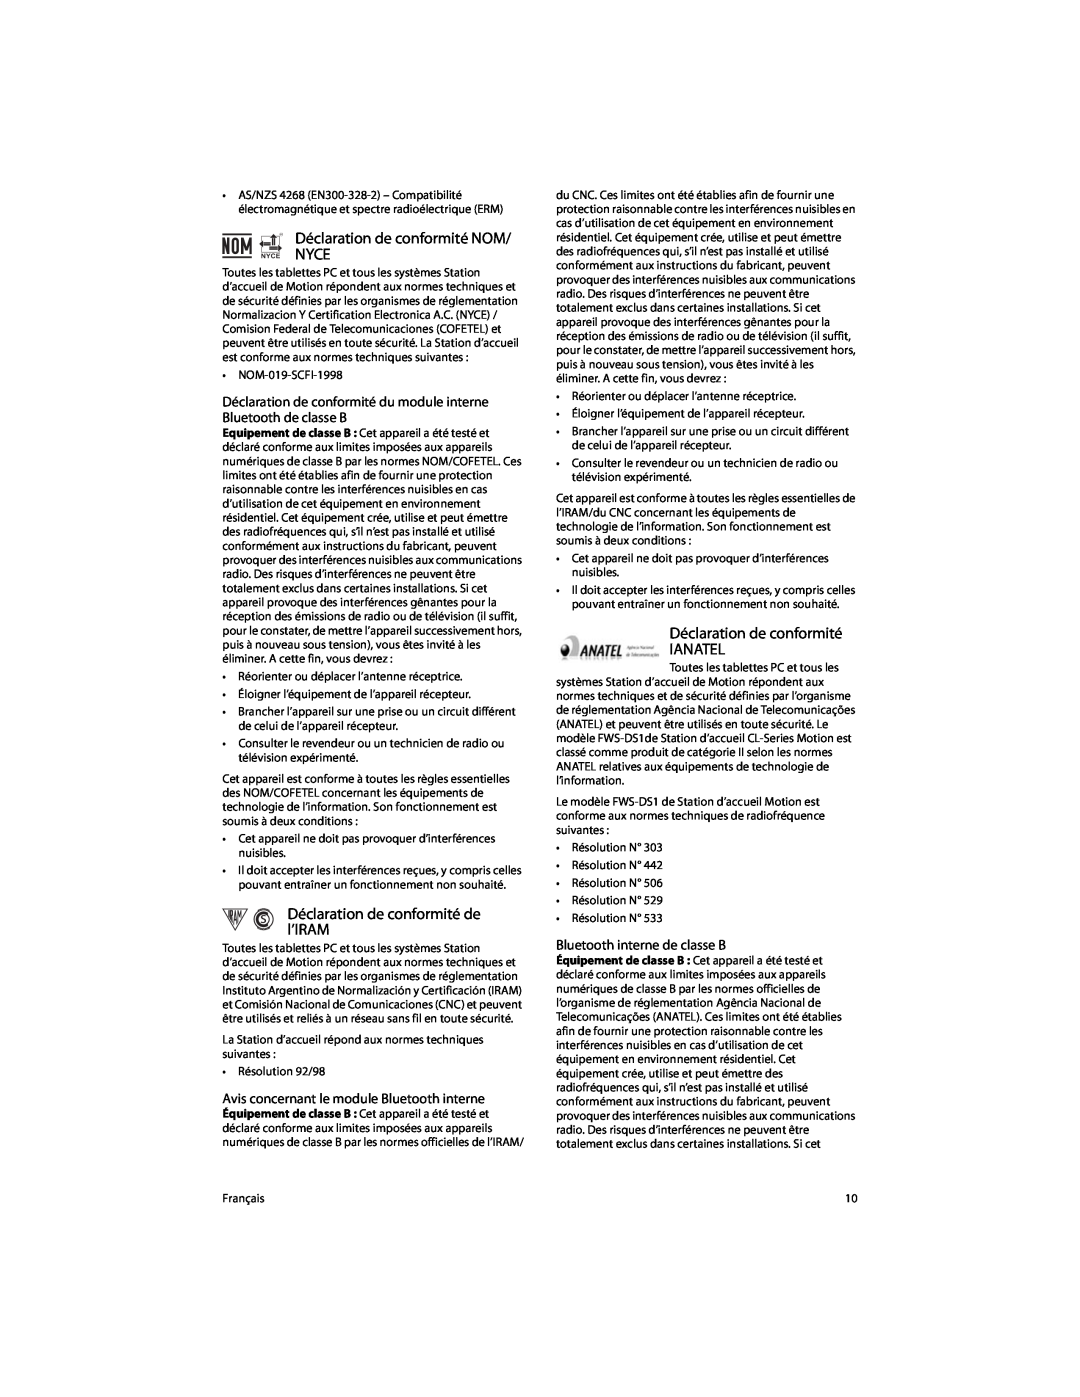 Motion Computing FWS-DS1 warranty Déclaration de conformité NOM, l’IRAM, Déclaration de conformité IANATEL 